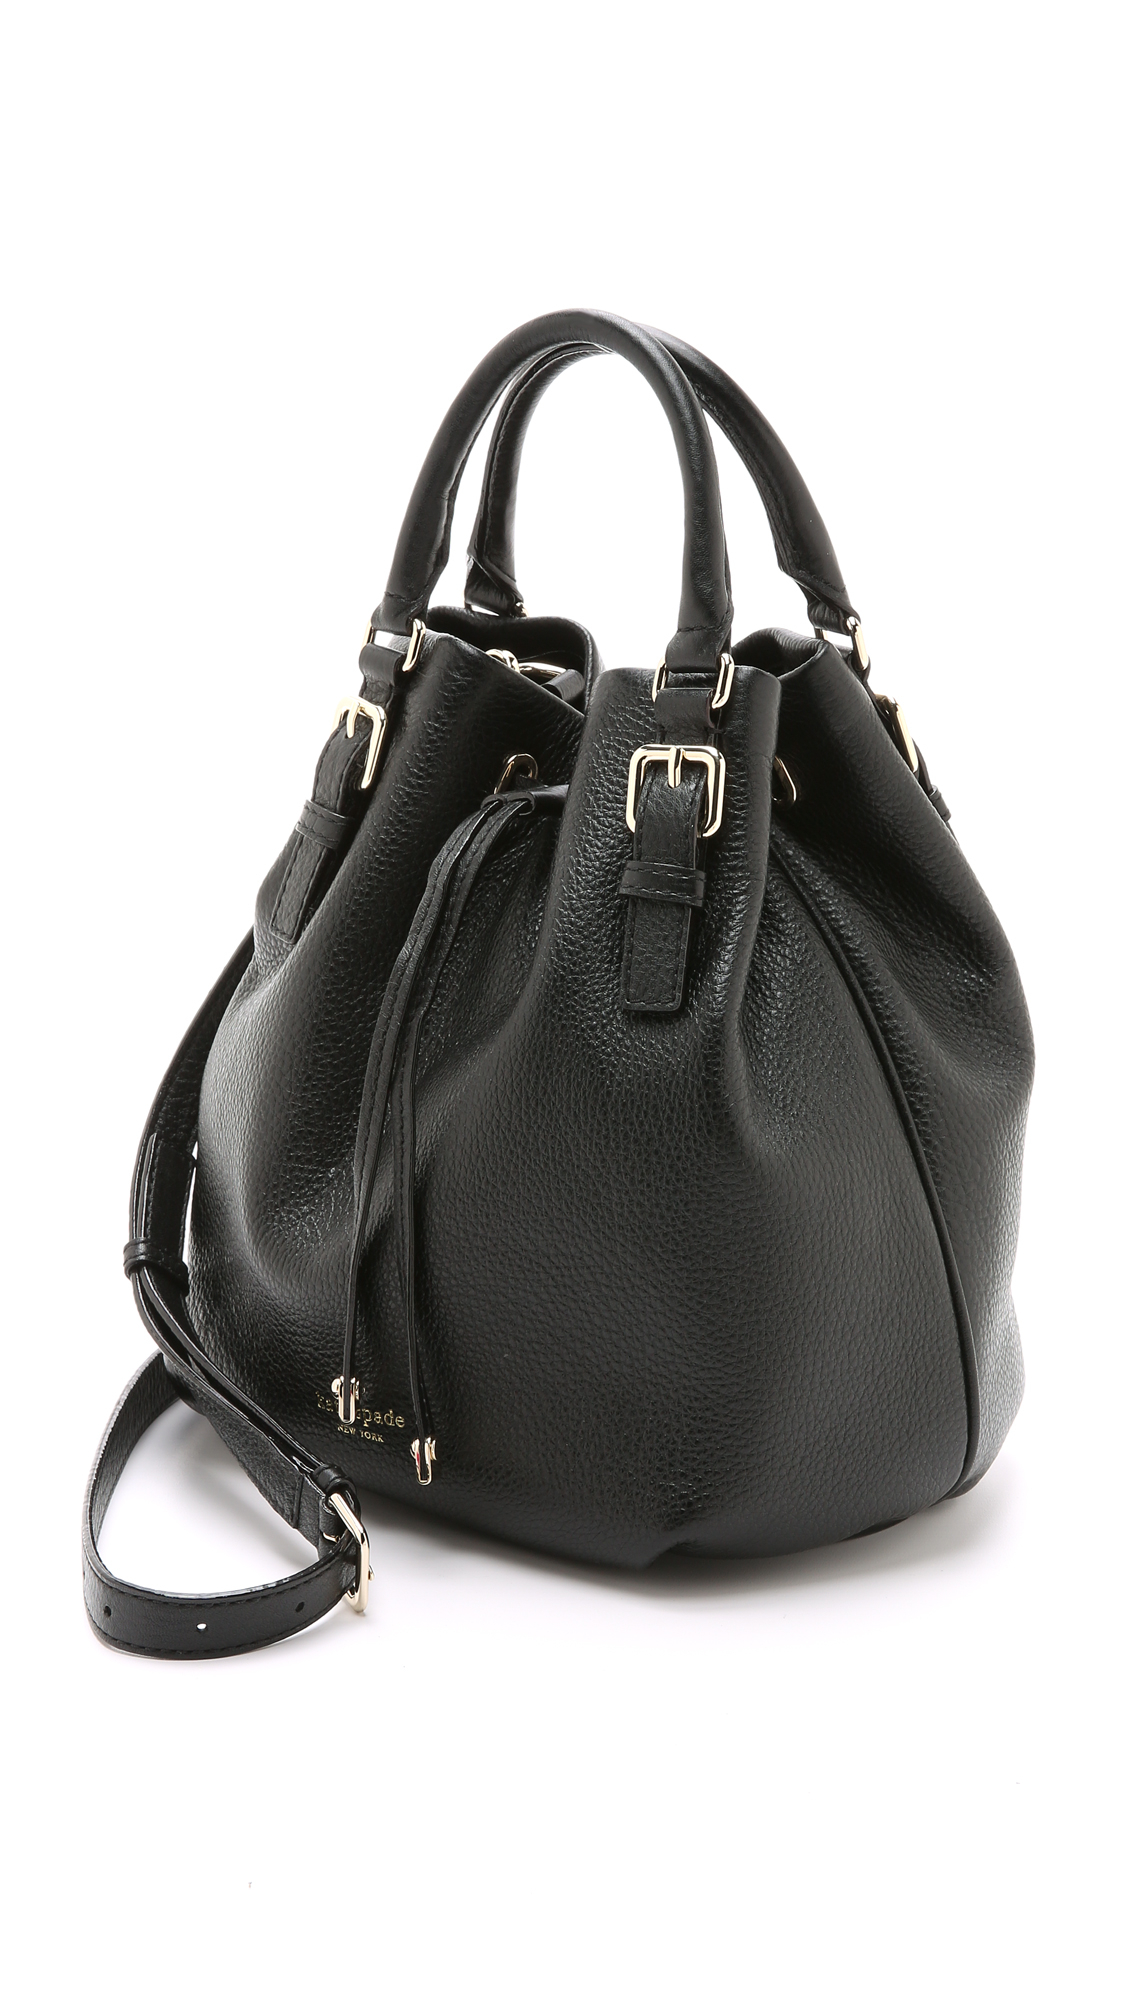 Kate Spade Sandy Bucket Bag - Black in Black - Lyst